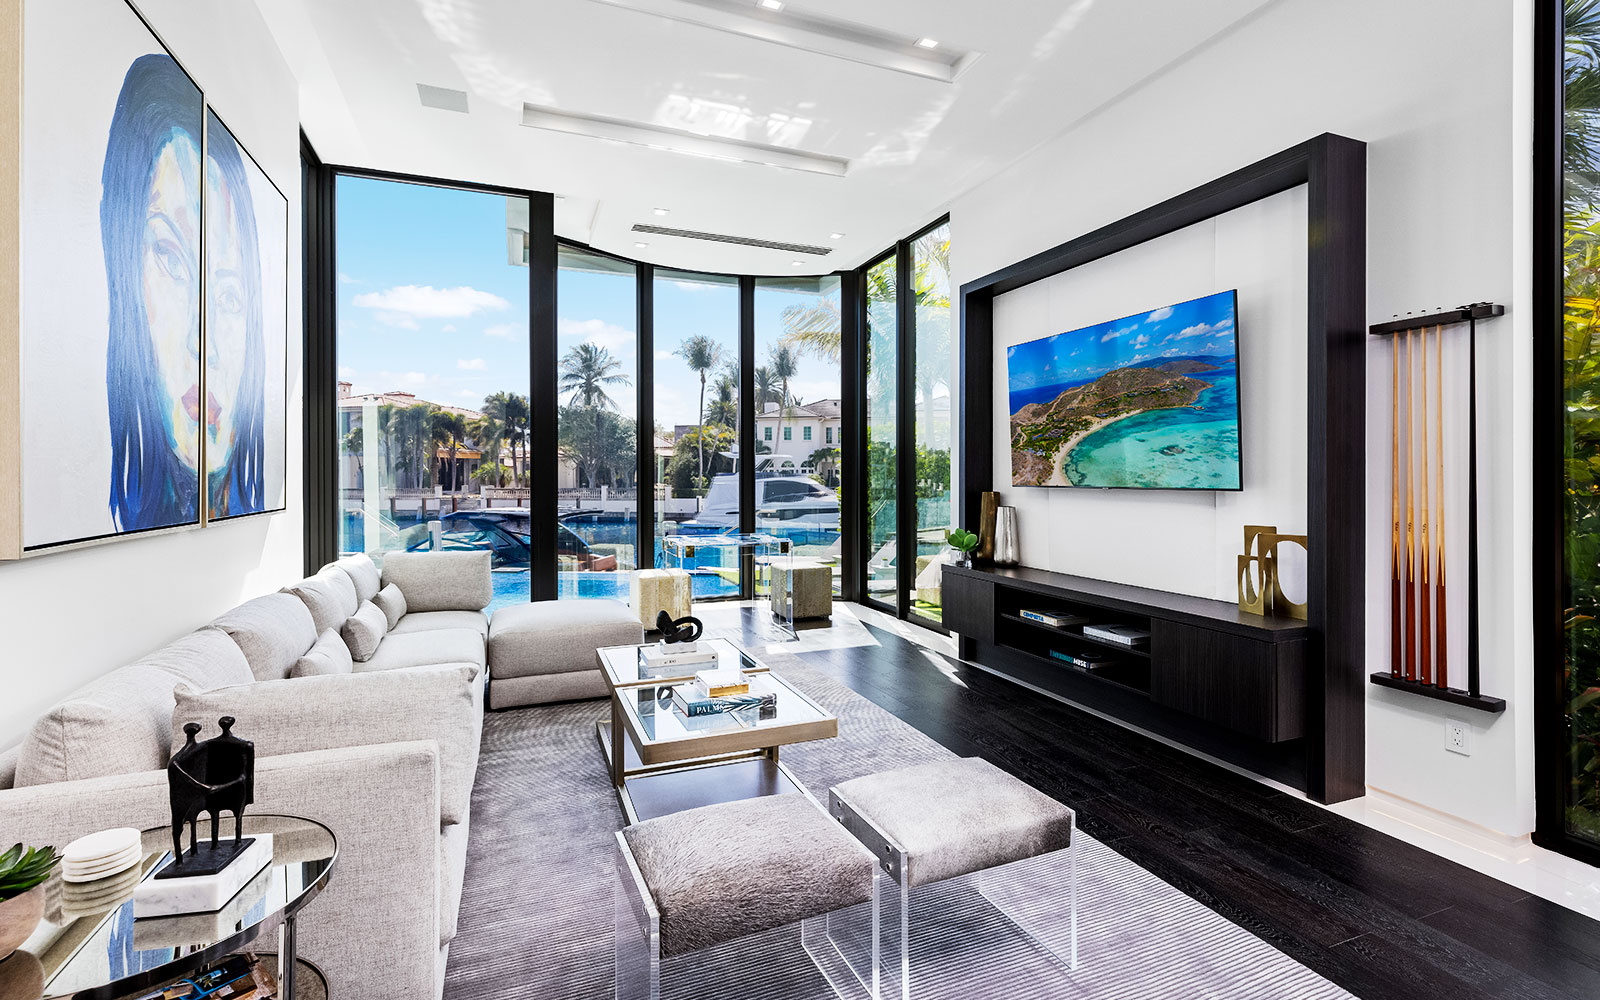 Luxury Boom: AbbVie’s Richard Gonzalez Latest to Buy in Boca